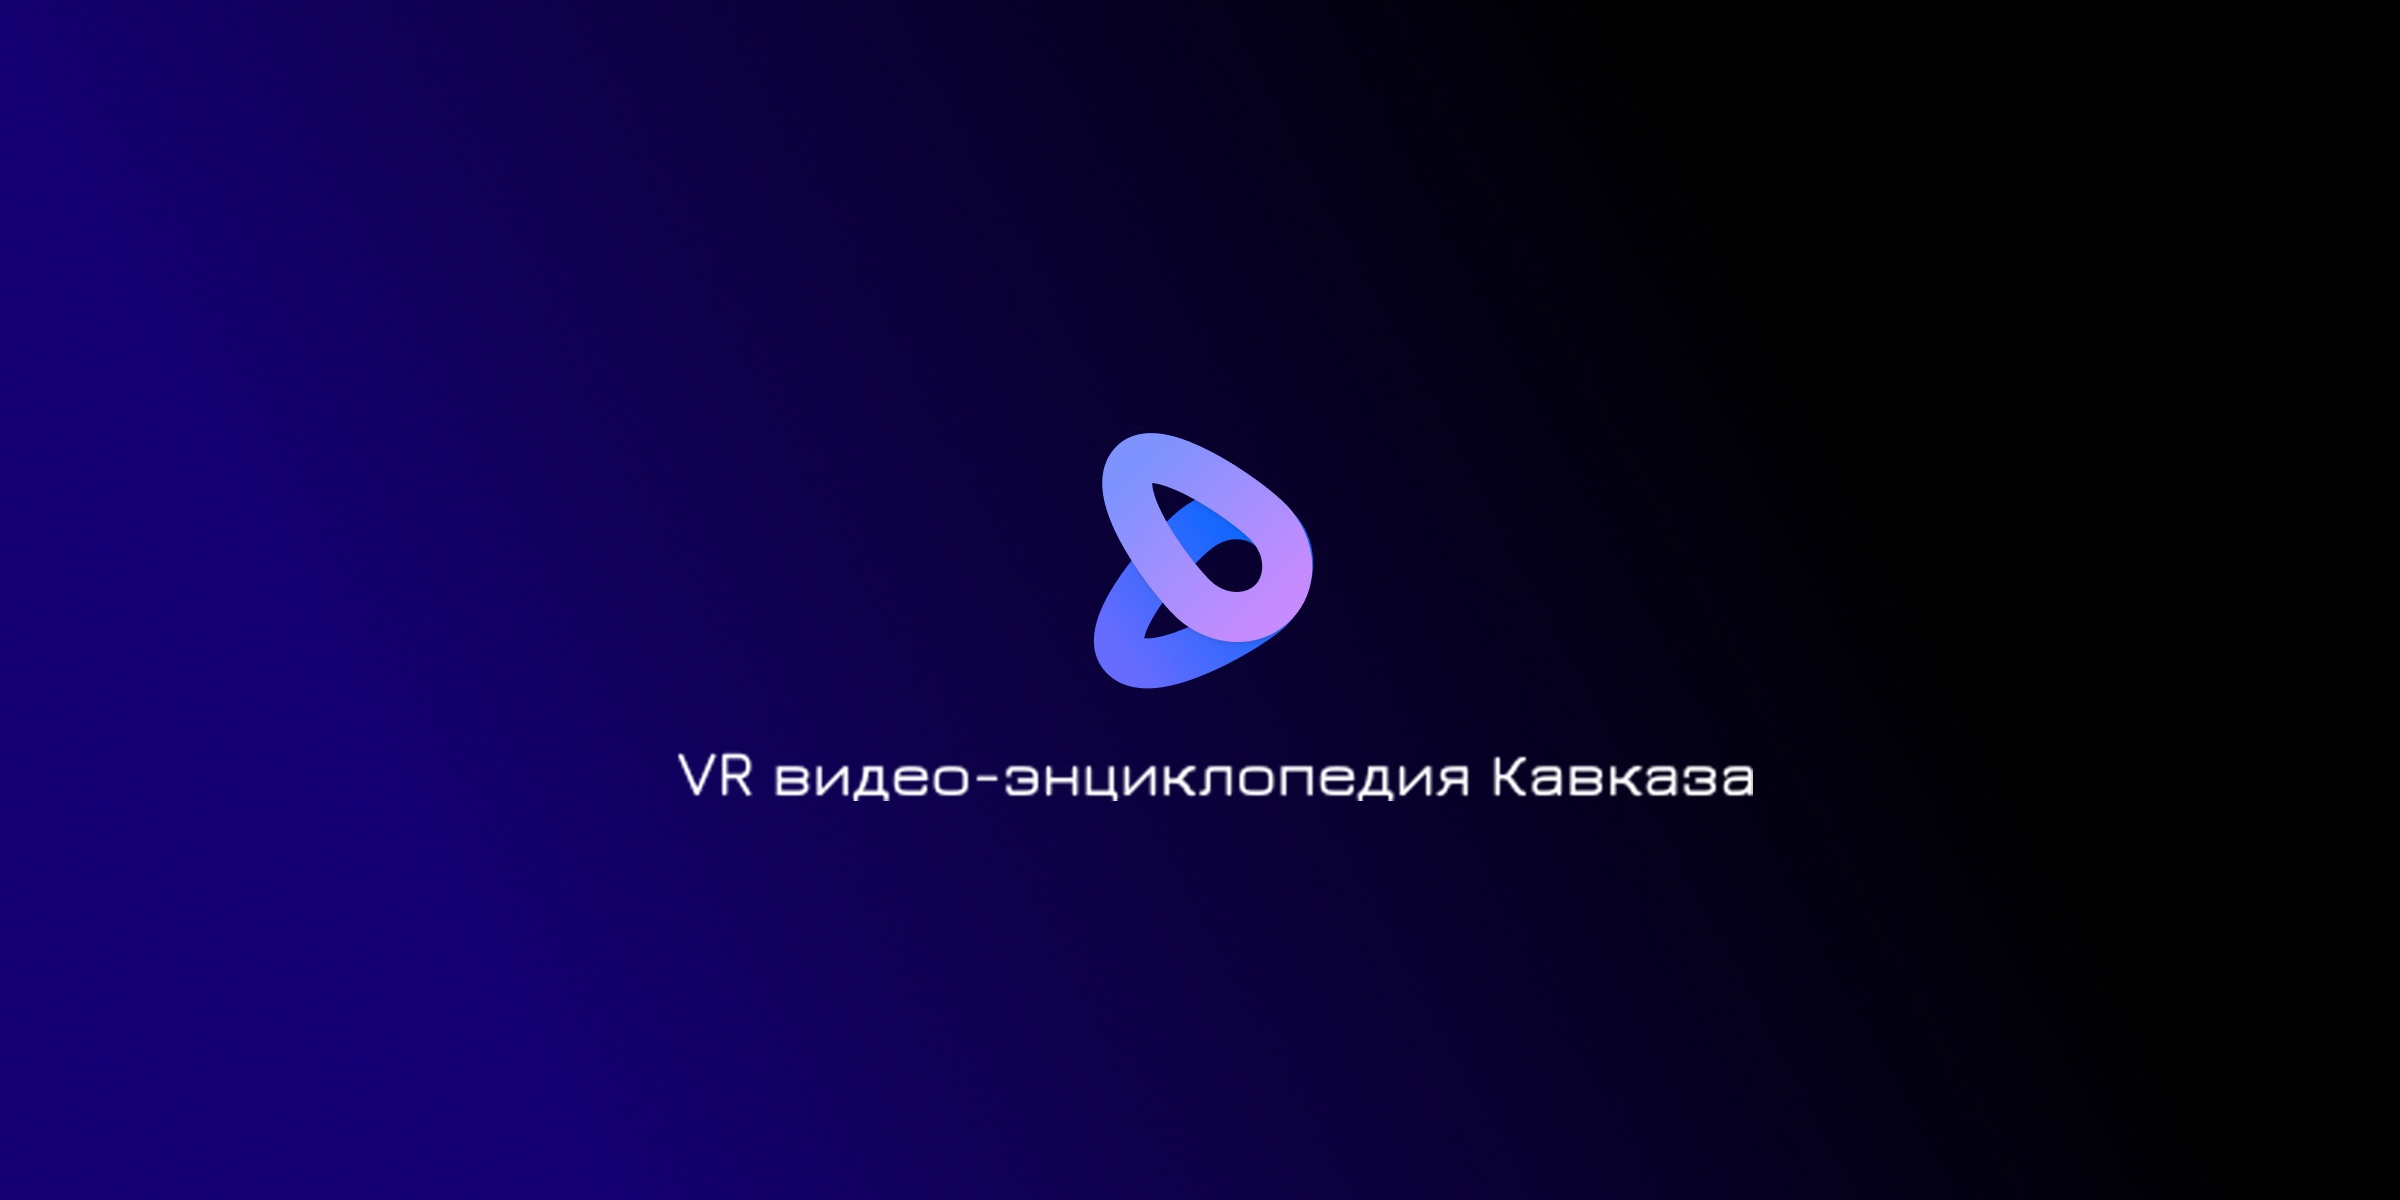 Откройте для себя Кавказ в новом измерении - с VR видео-энциклопедией!